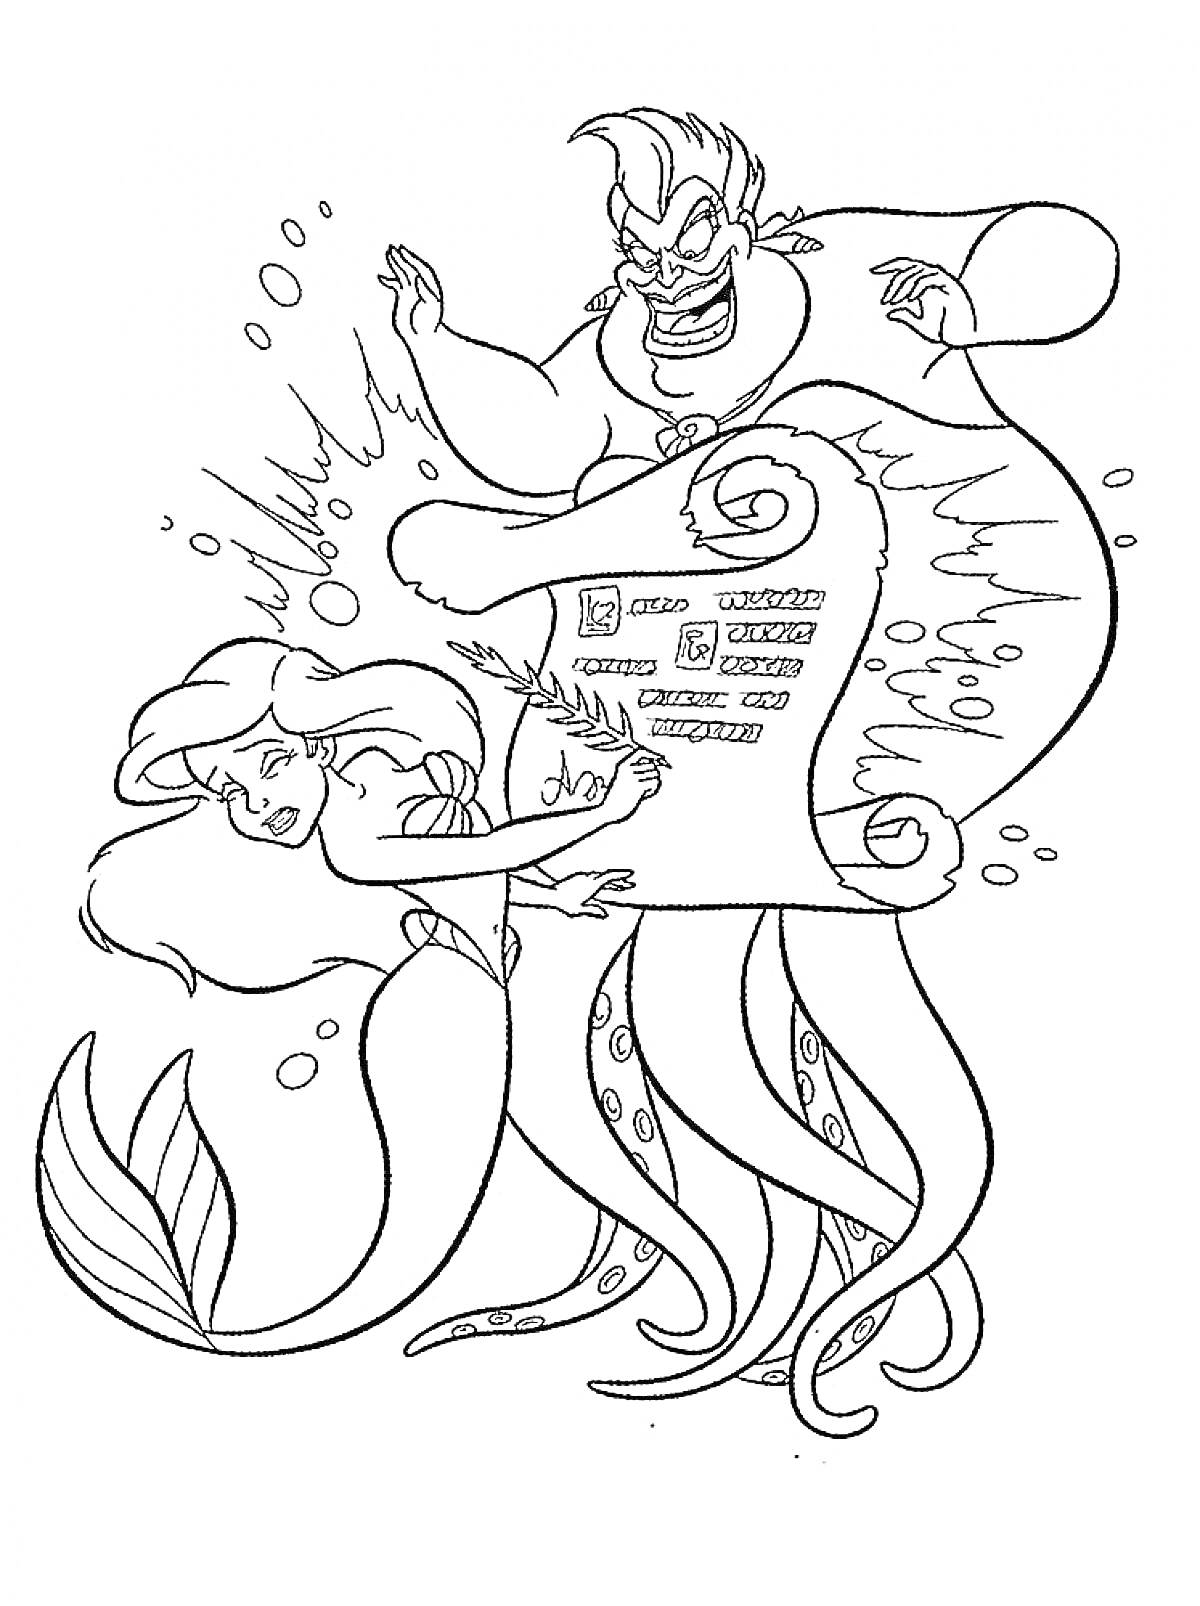  Ариэль и Урсула с магическим свитком под водой